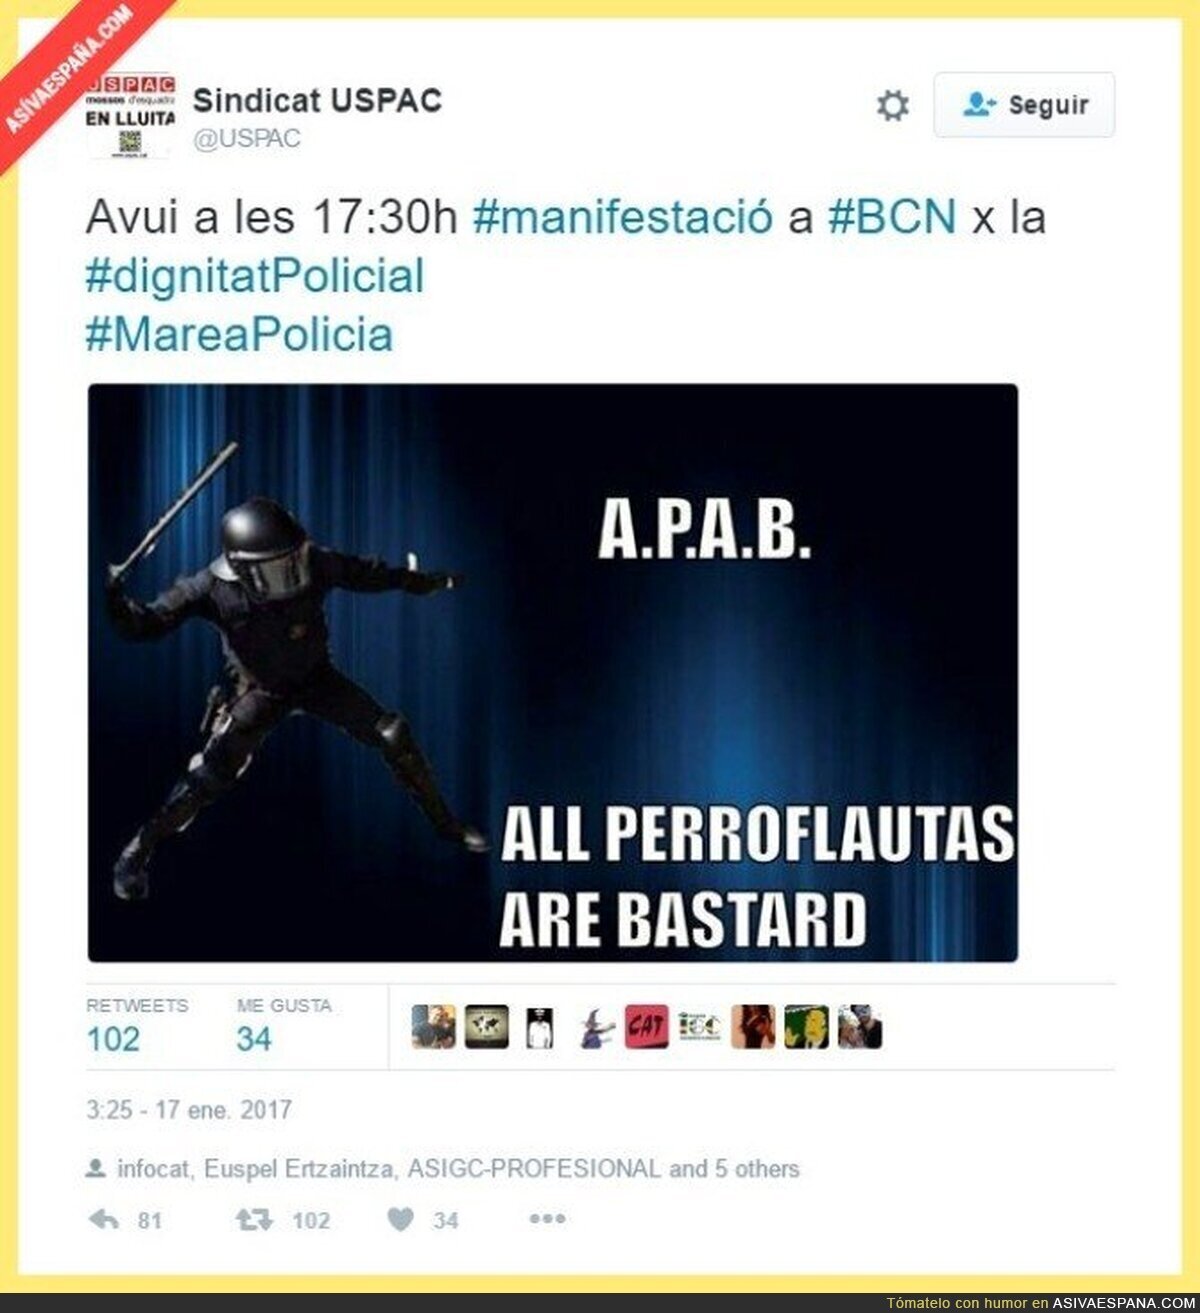 De esta manera el Sindicato USPAC avisaba de una huelga de policías en Twitter